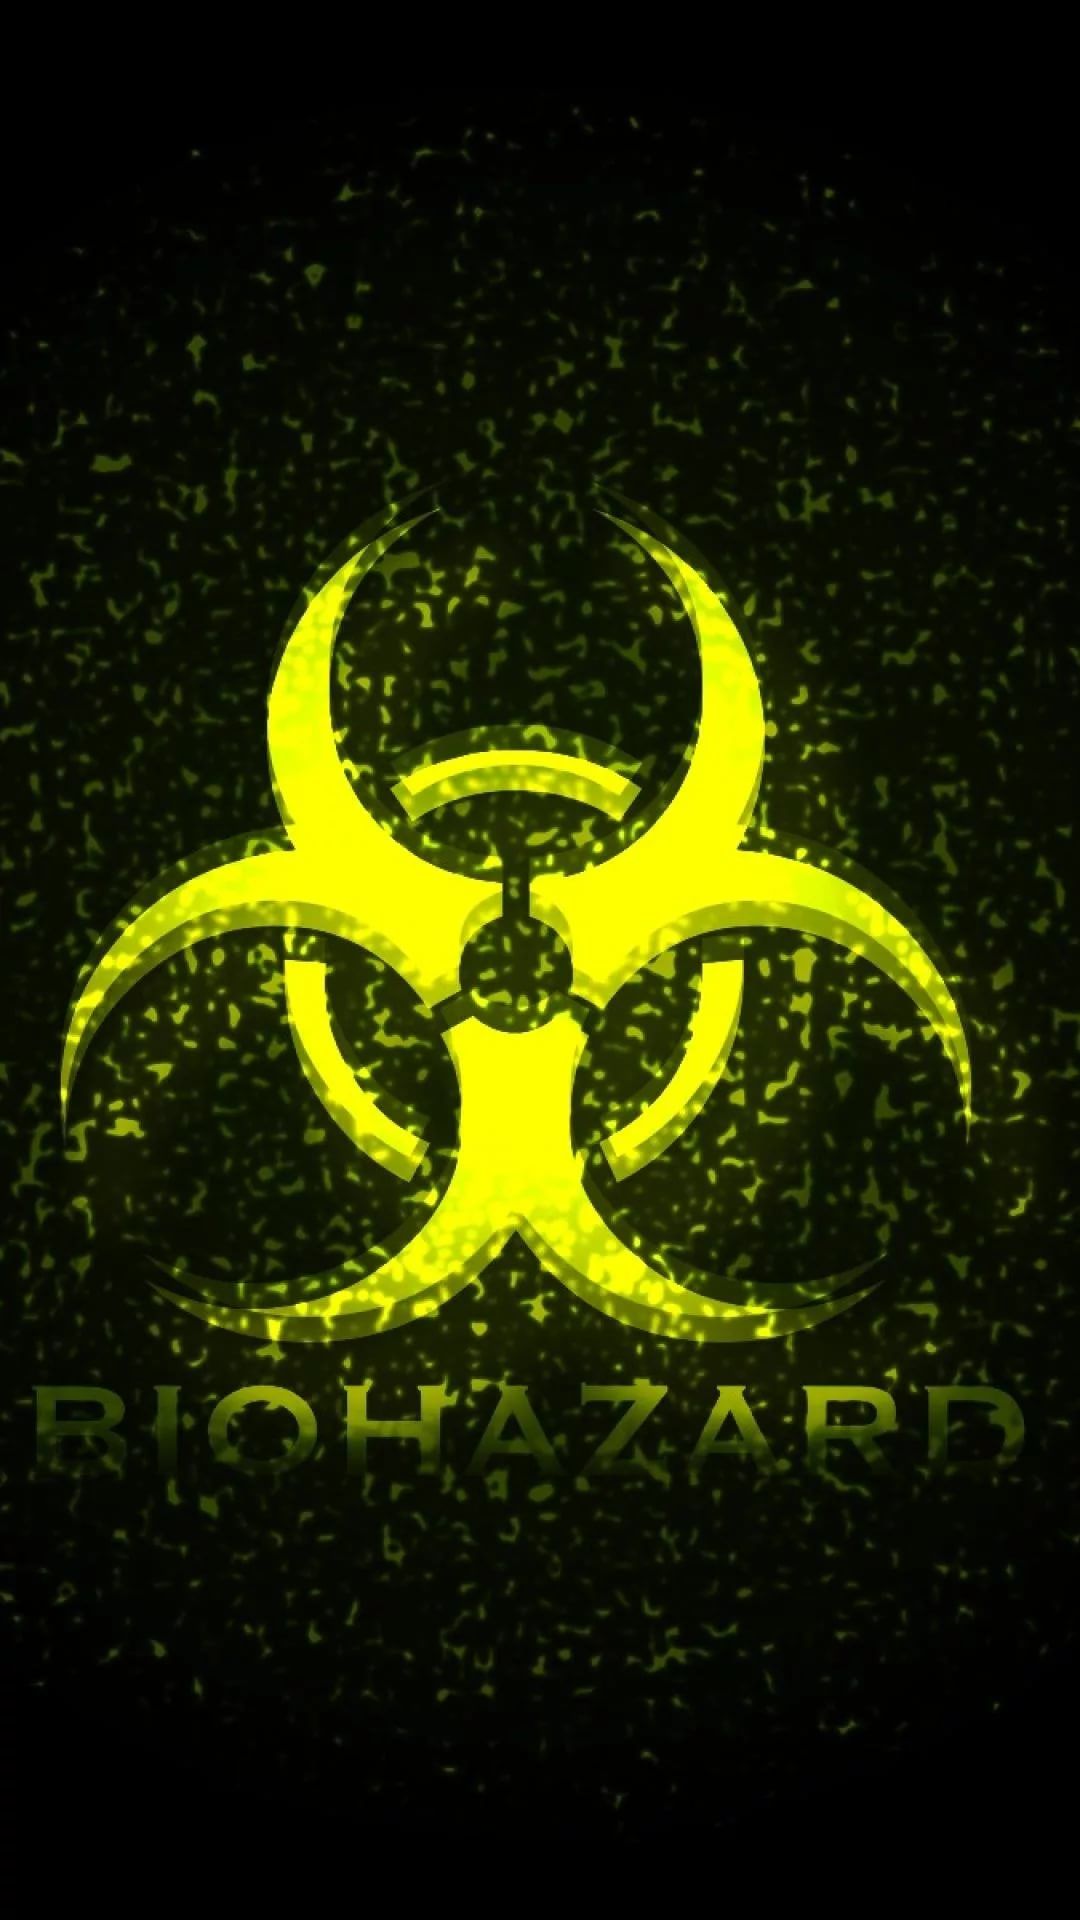 Biohazard iPhone 7 wallpaper